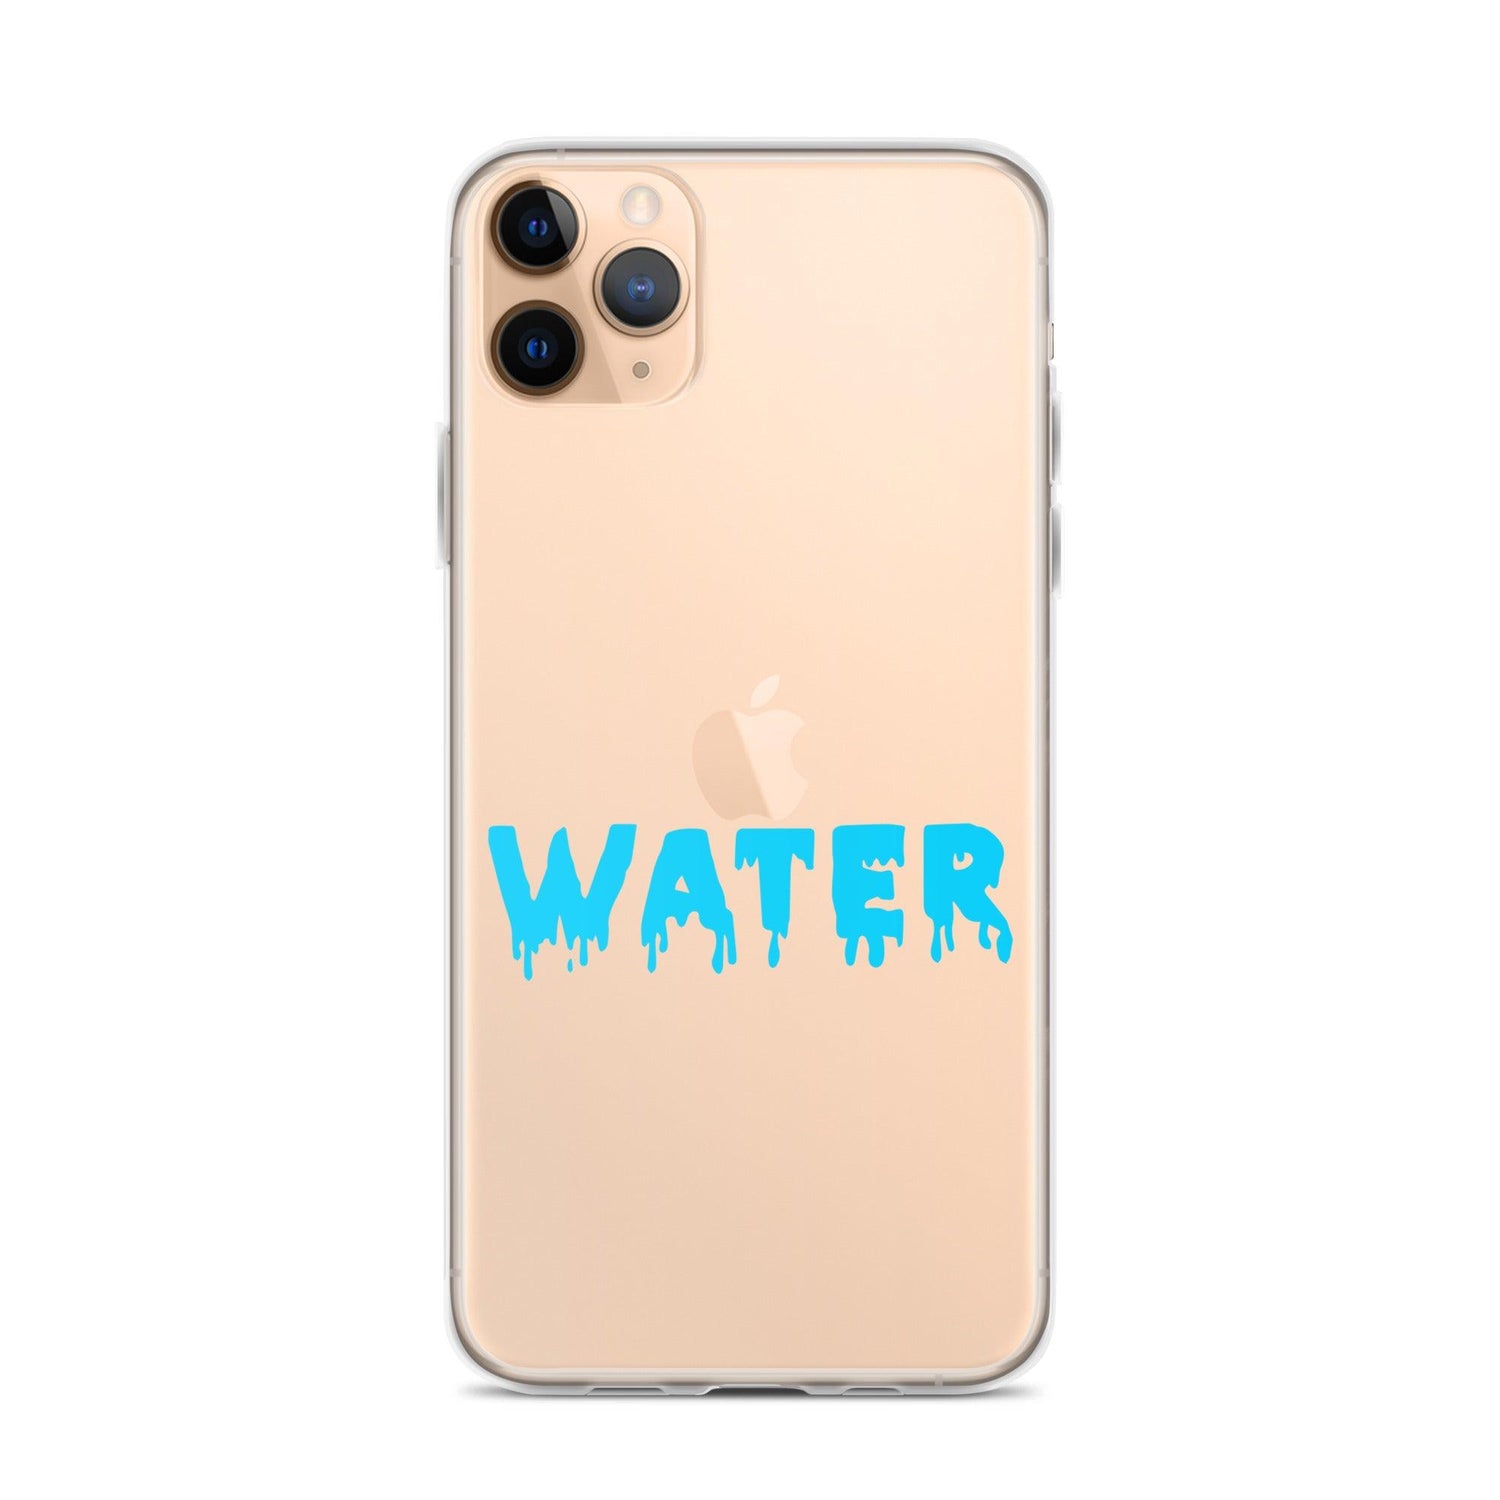 Dracovii "Water" iPhone Case - Fan Arch